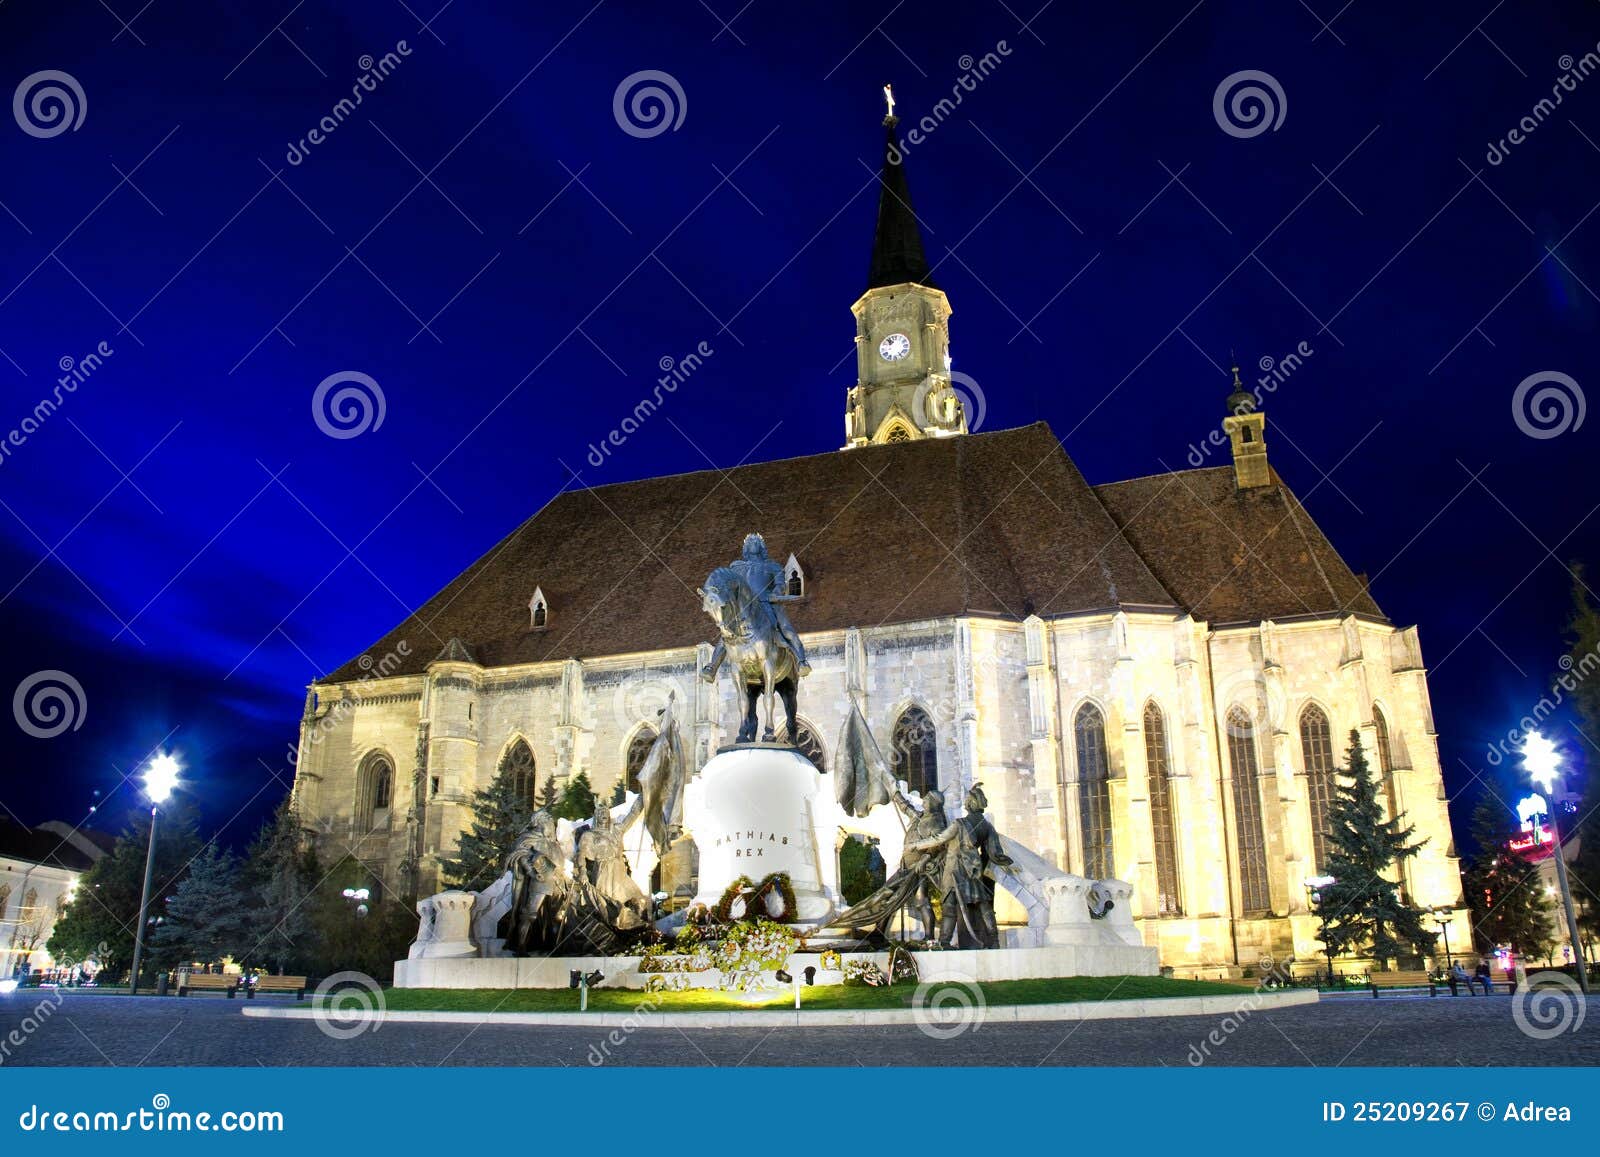 mathias rex statue and saint michail church 